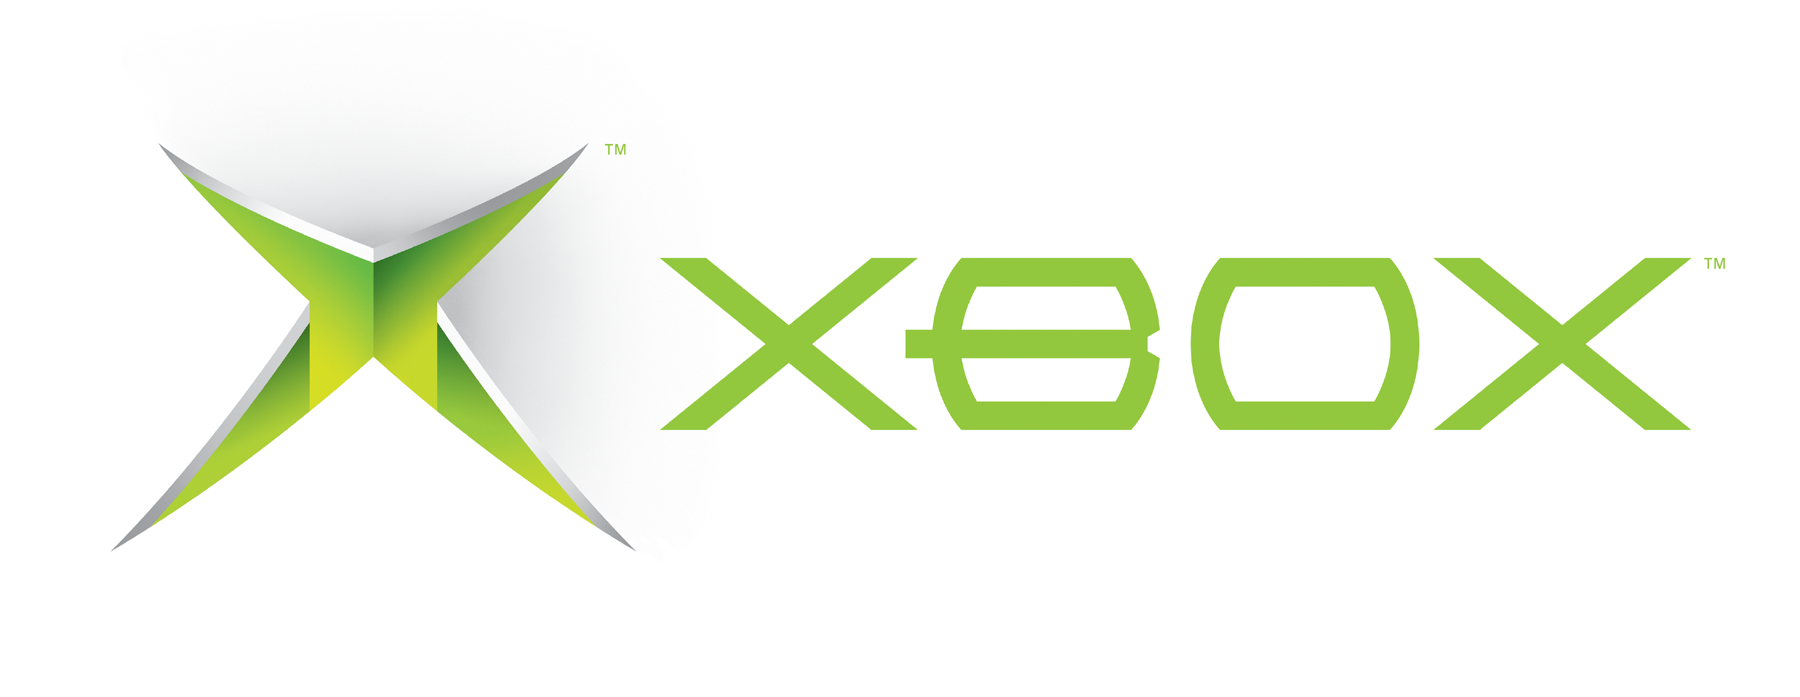 Microsoft presentara su nueva generación de Xbox en mayo